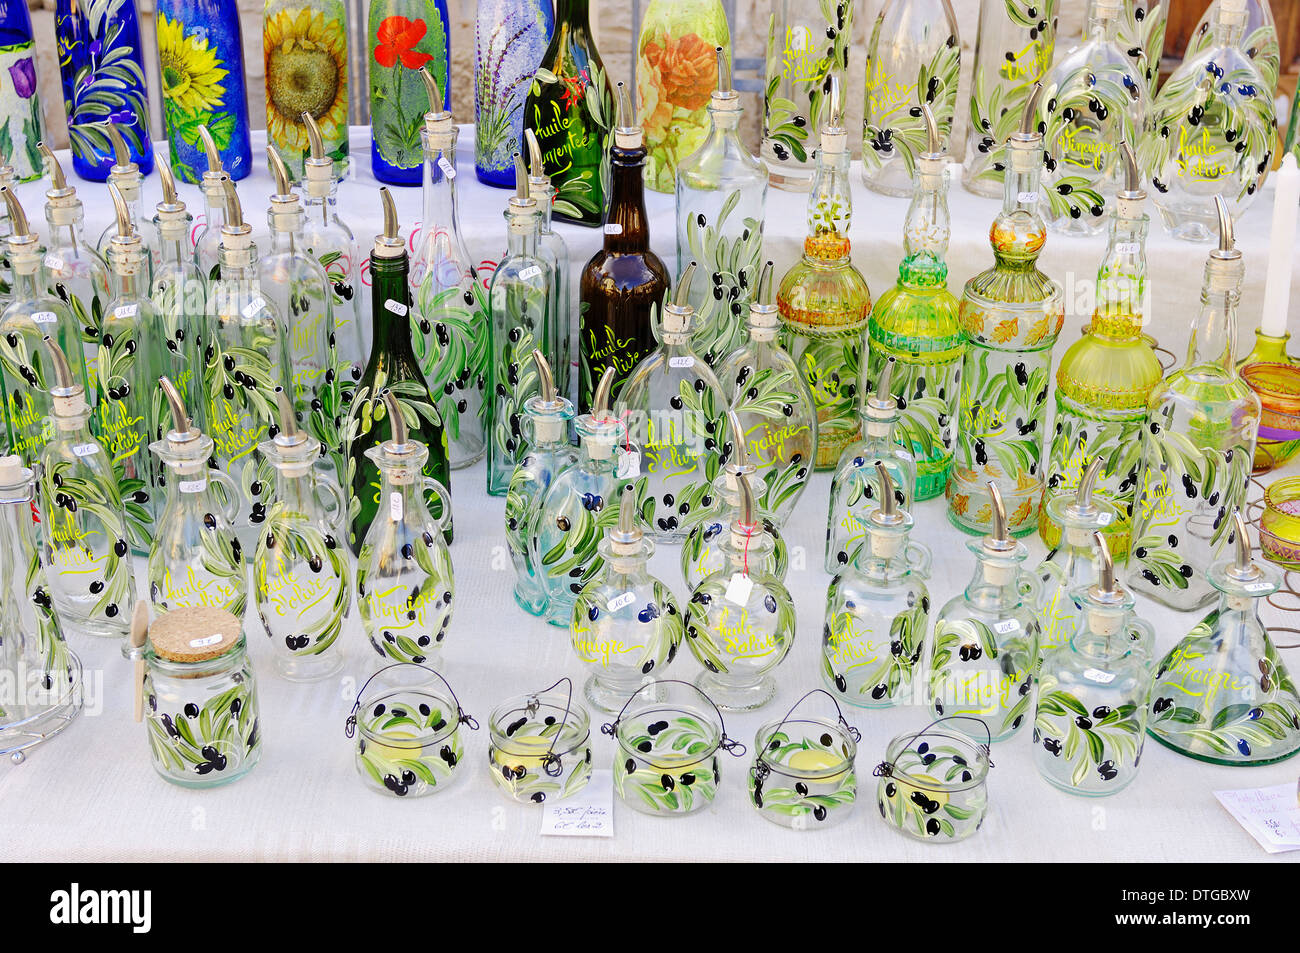 Stand de bouteilles et de verres pour l'huile d'olive, Sault, Vaucluse, Provence-Alpes-Cote d'Azur, dans le sud de la France Banque D'Images